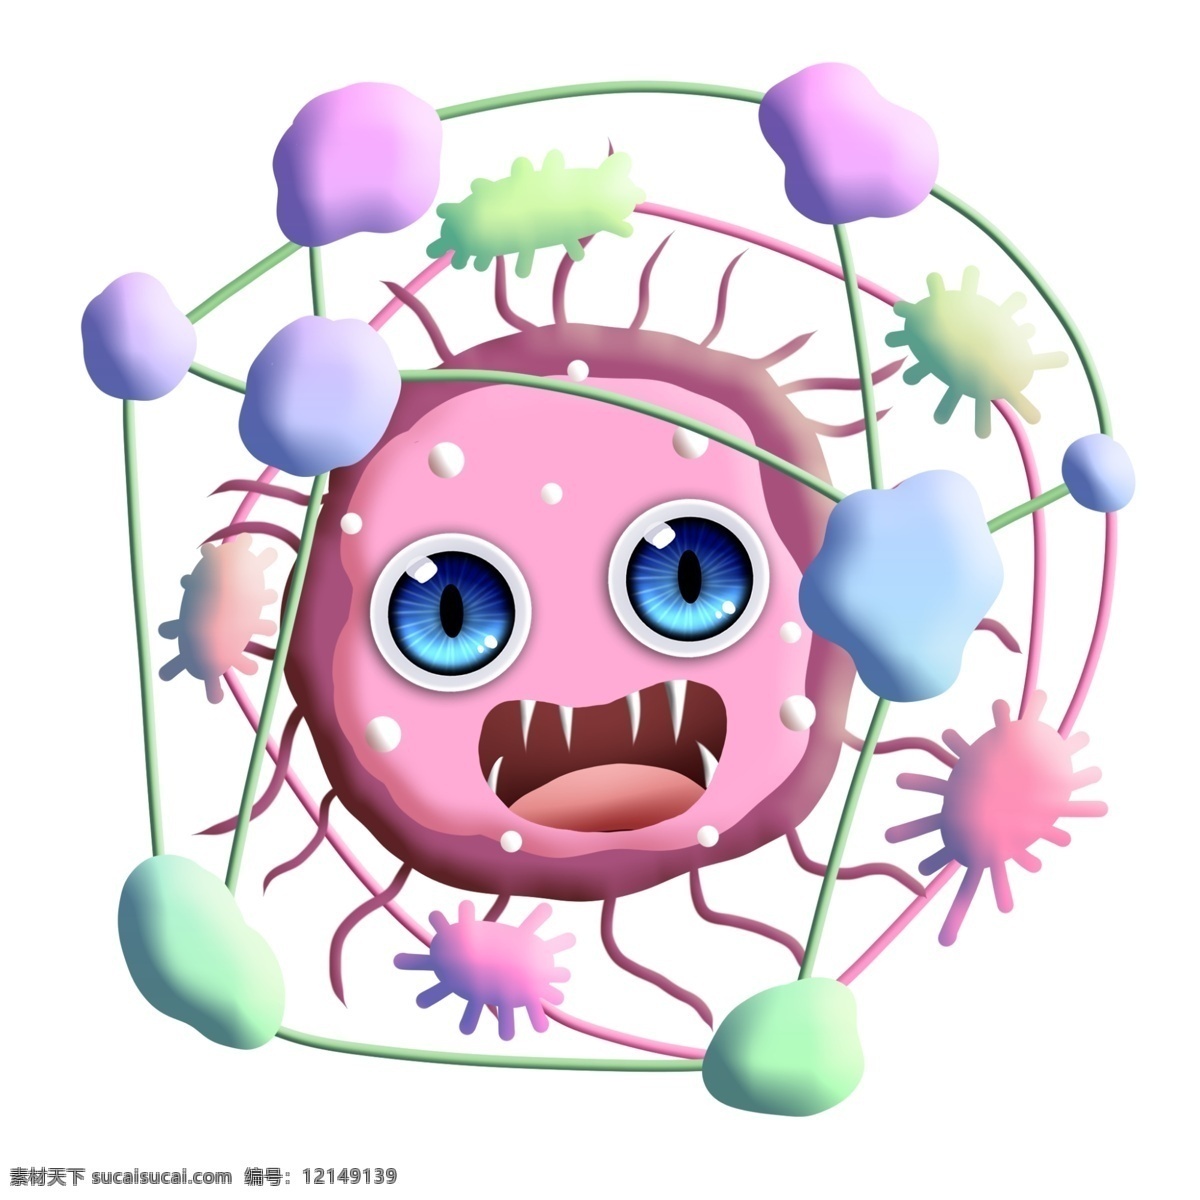 粉色 触手 彩色 细菌 群 卡通 尖牙 大眼睛 圆点 细菌群 串连 杆菌 病毒 医学 生物 疾病 生病 菌体 菌状 细胞